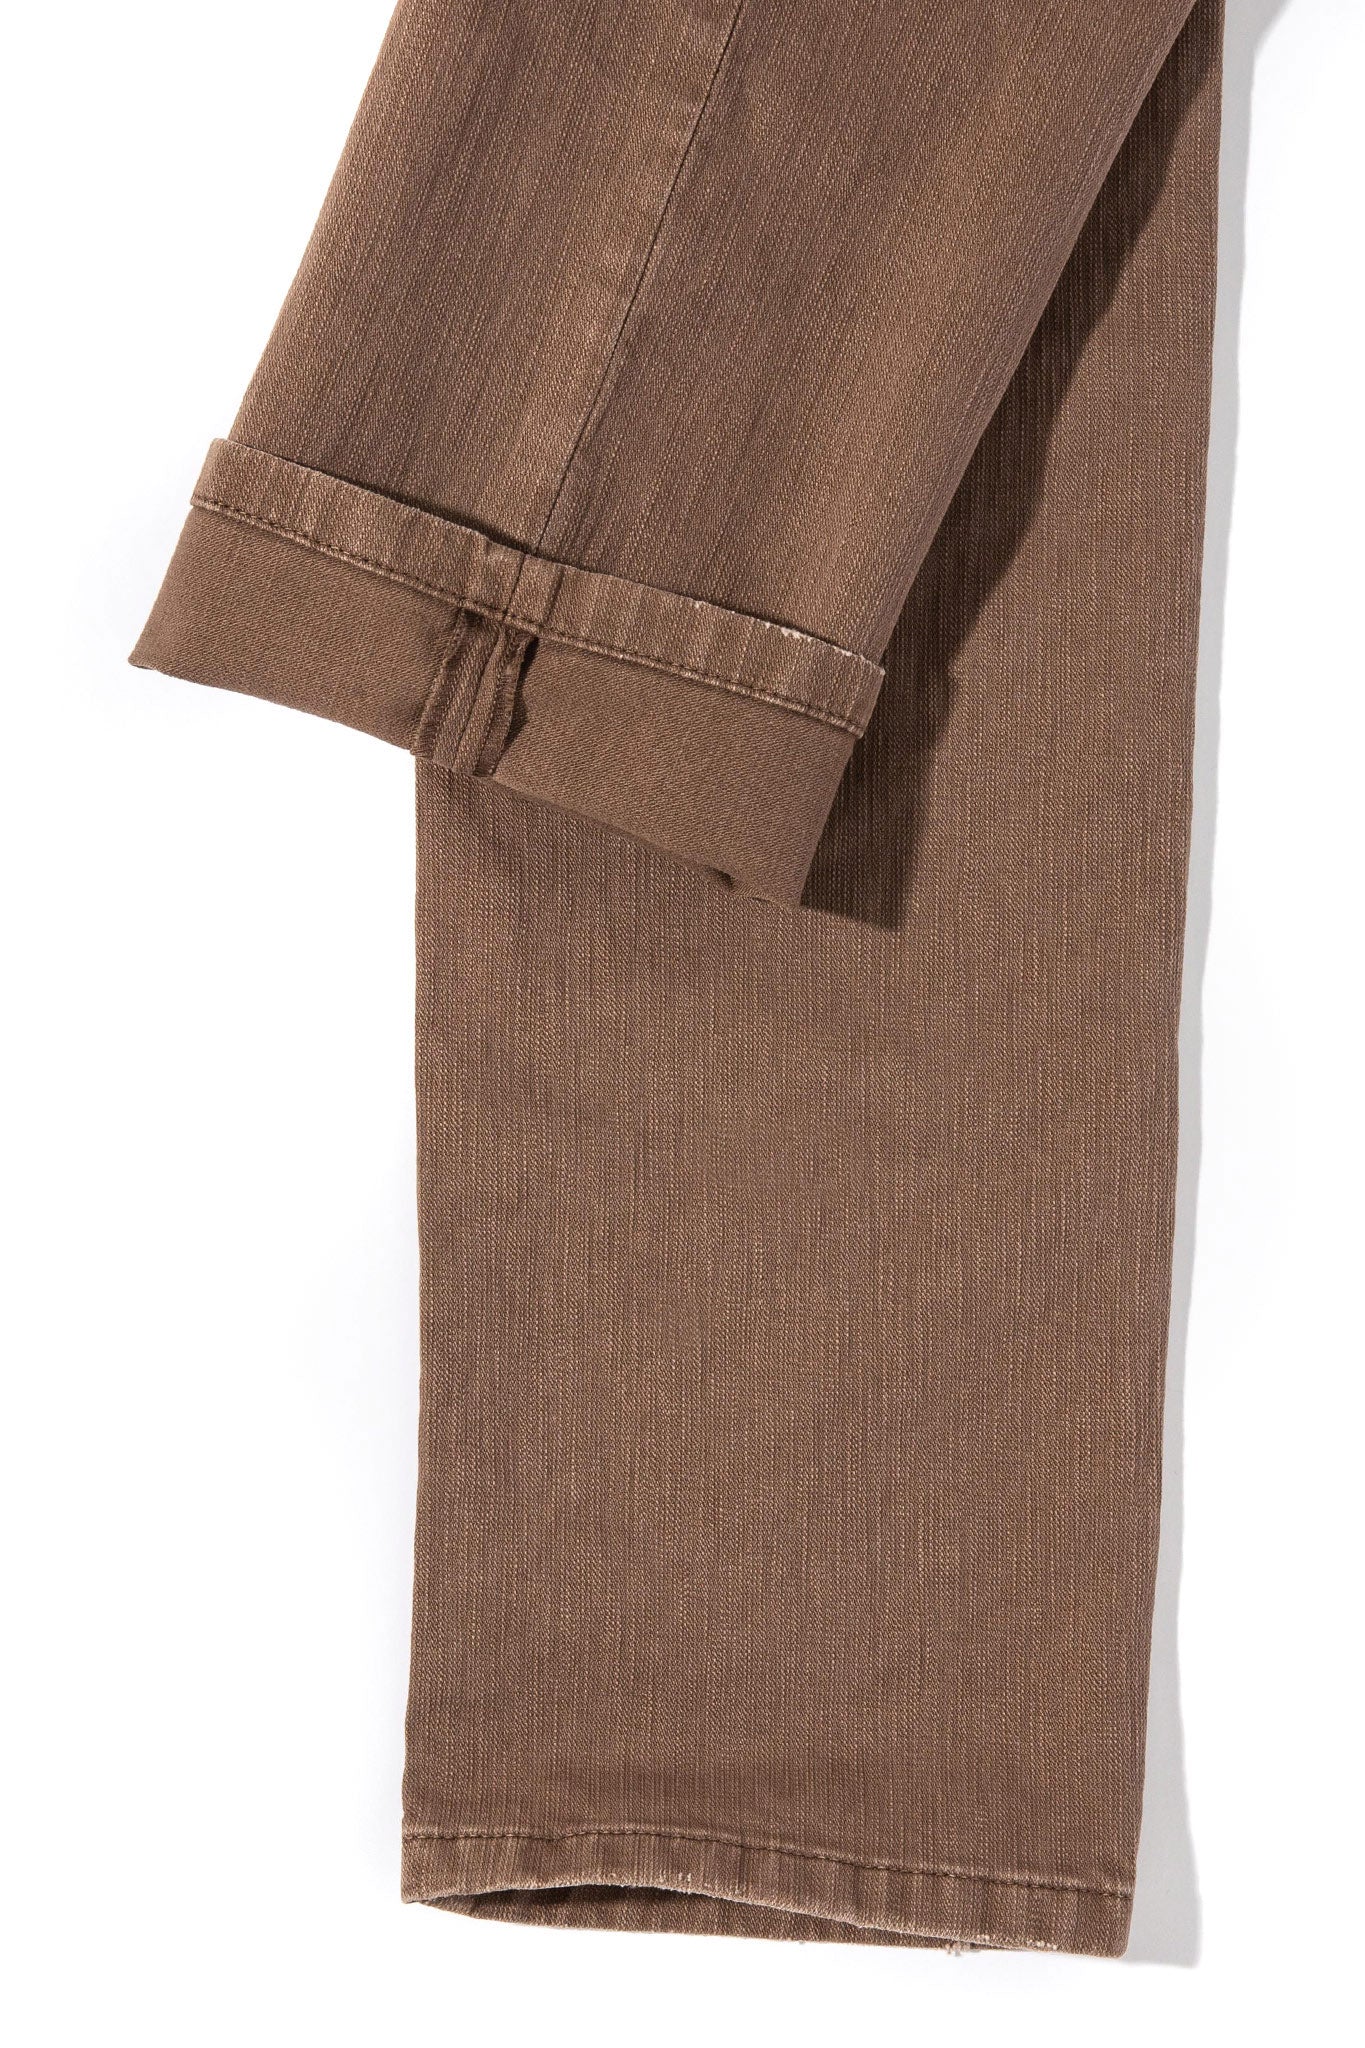 Silverton Colored Denim In Tortora | Mens - Pants - 5 Pocket | Axels Premium Denim